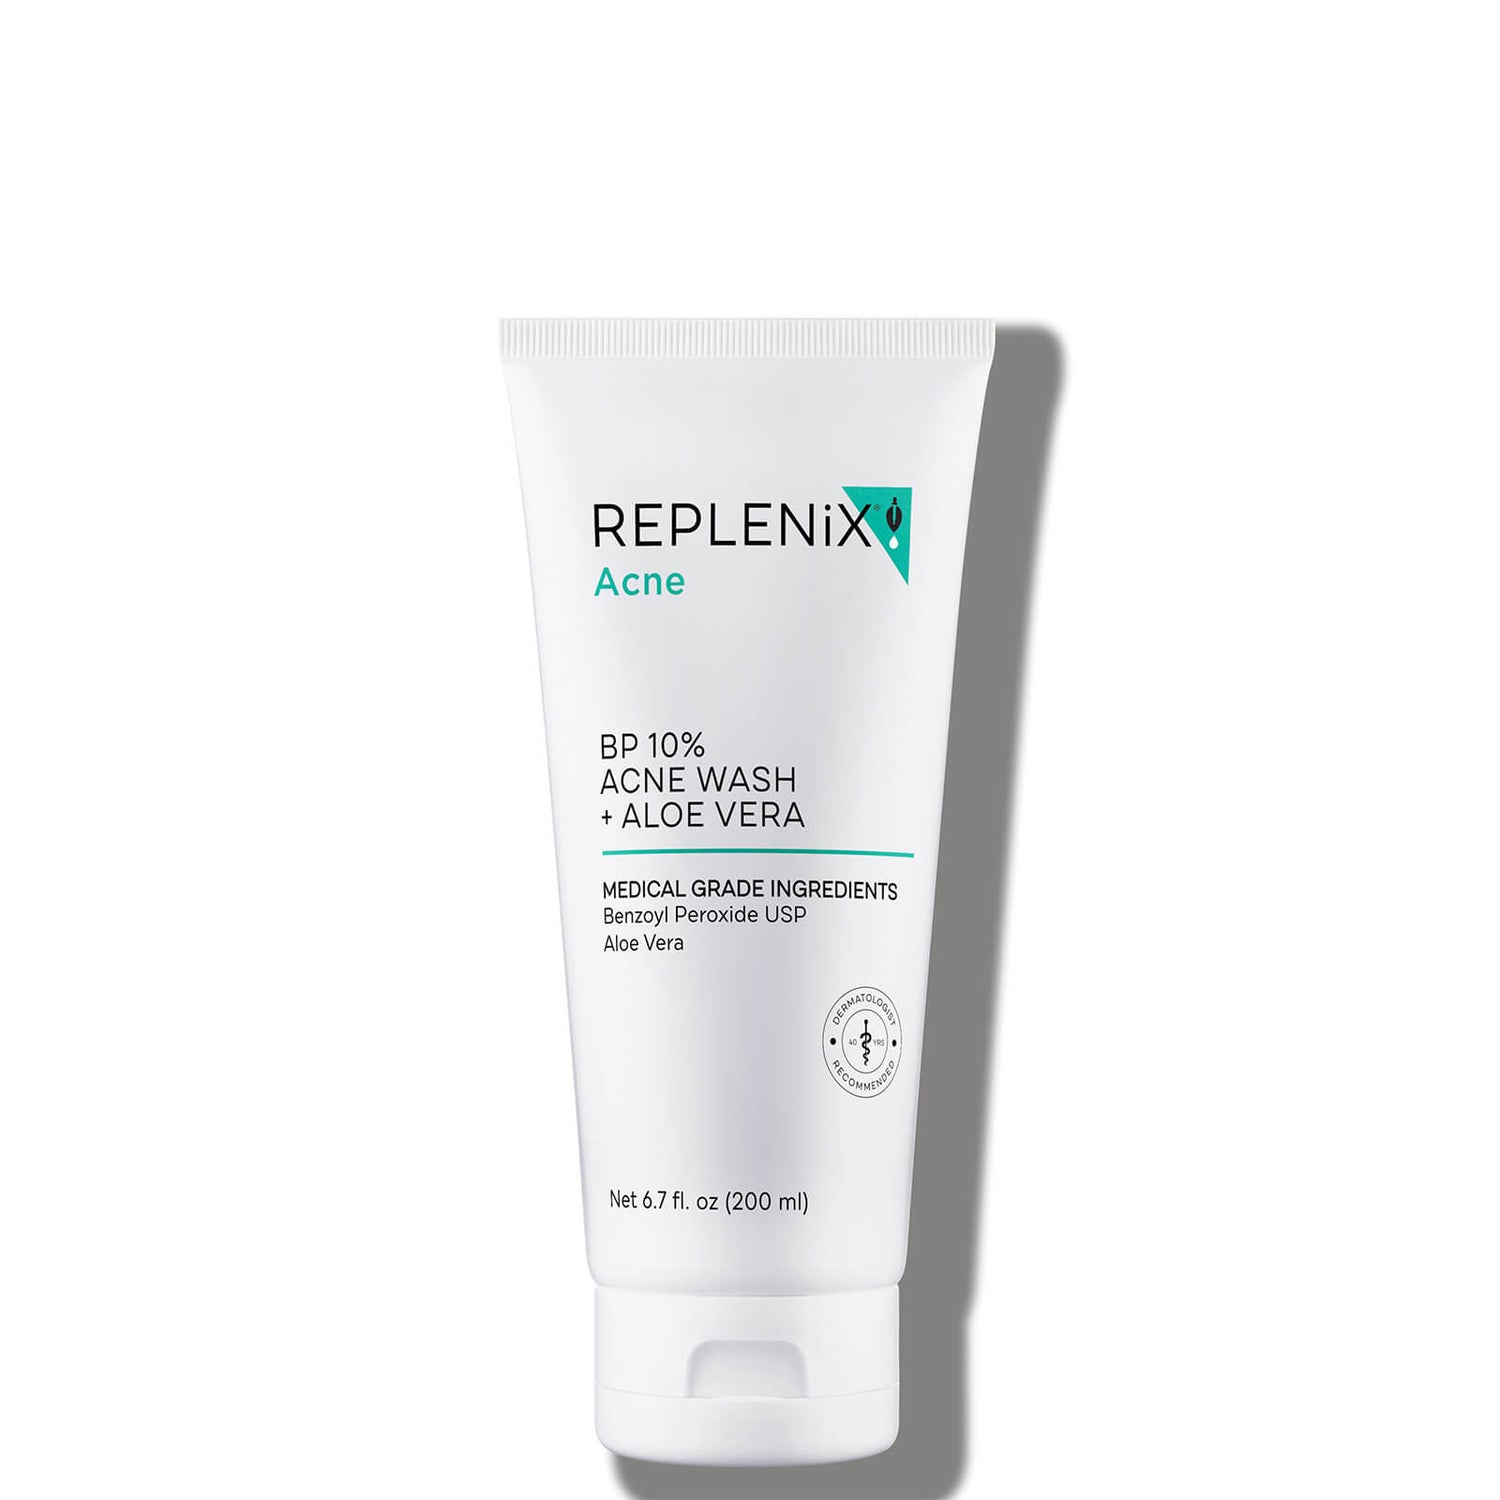 Replenix BP 10% Acne Wash and Aloe Vera